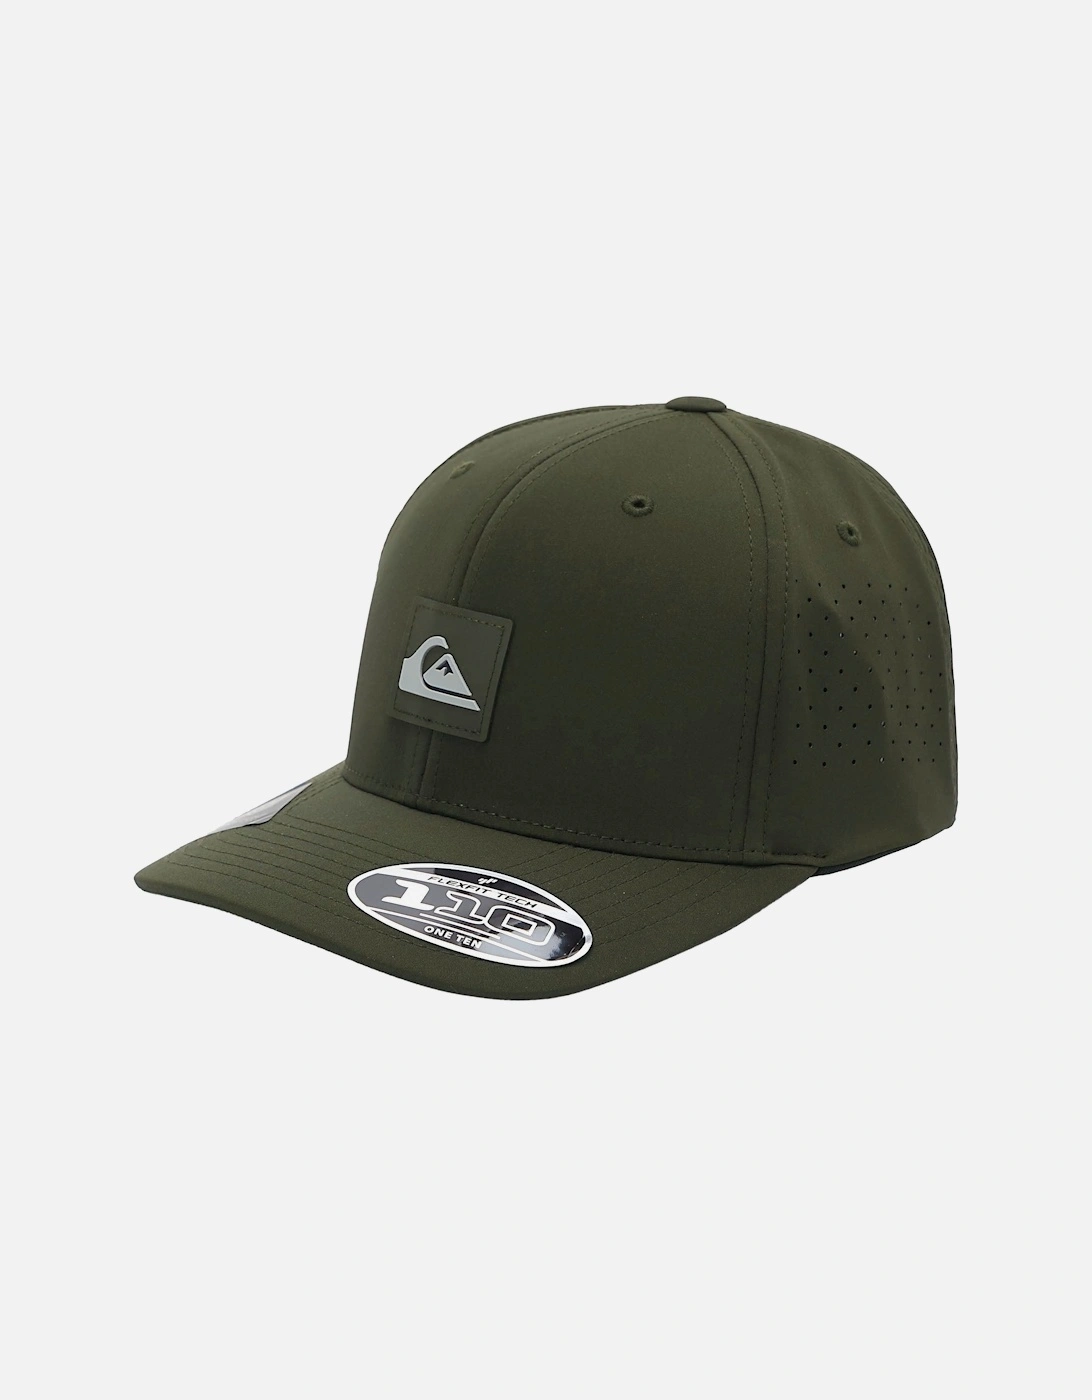 Mens Adapted Flexifit Curved Visor Baseball Cap Hat - Four Leaf Clover, 3 of 2